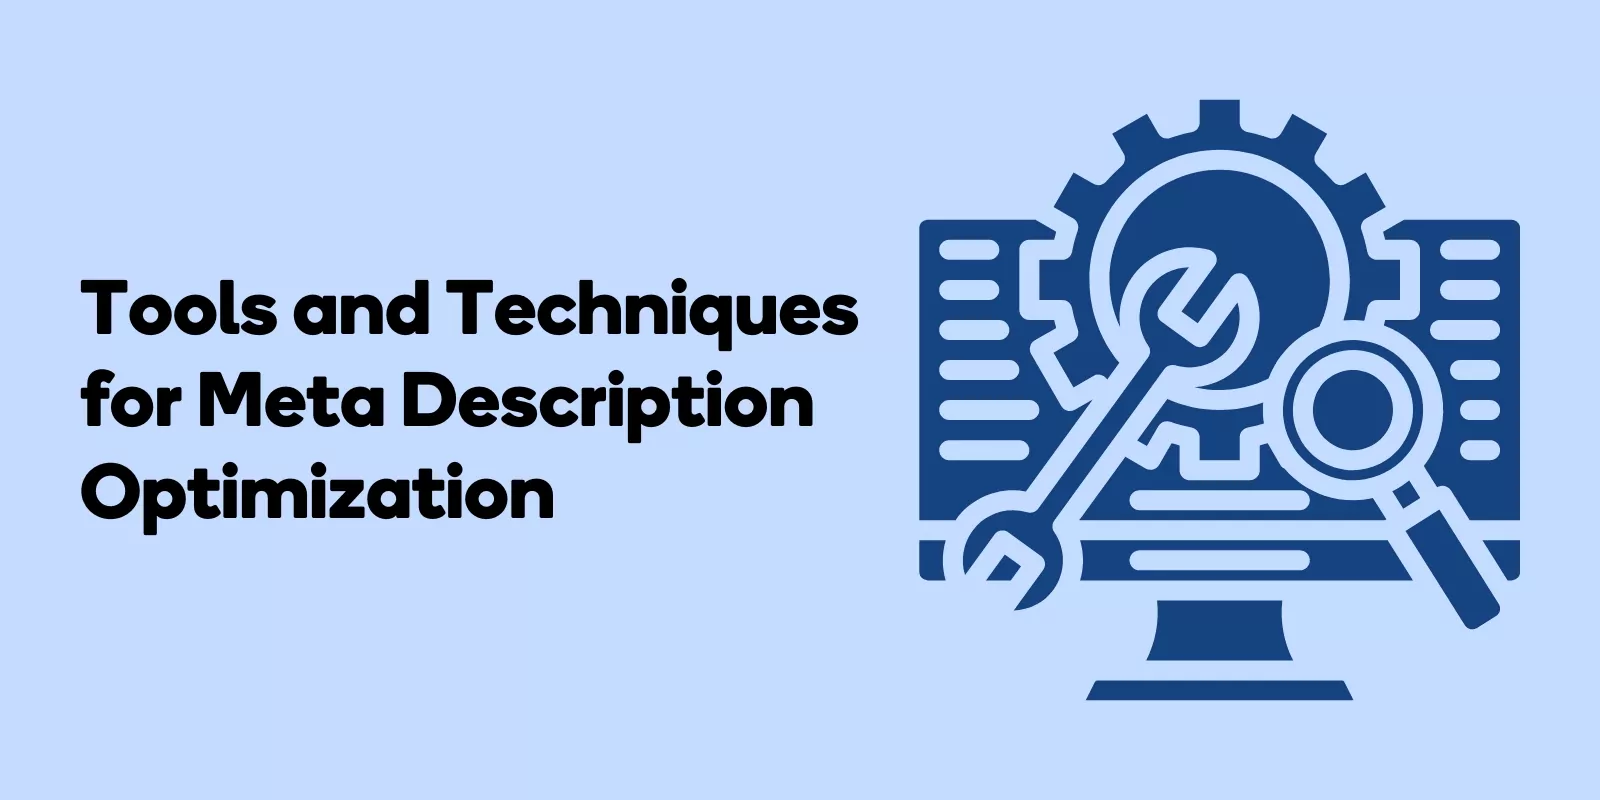 Tools and Techniques for Meta Description Optimization